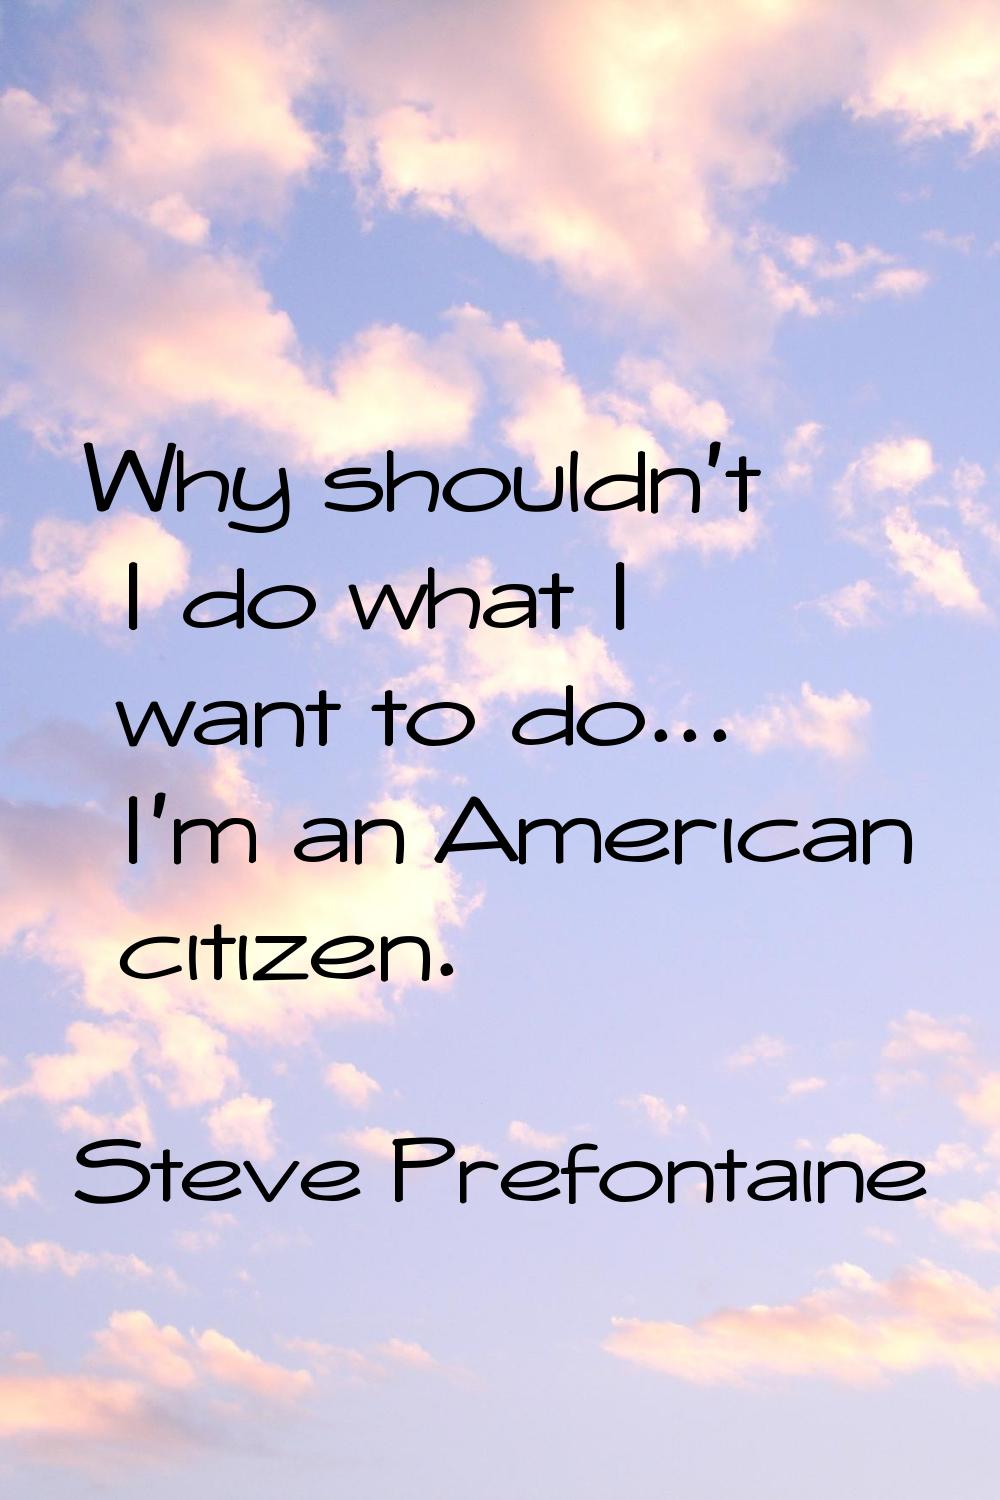 Why shouldn't I do what I want to do... I'm an American citizen.